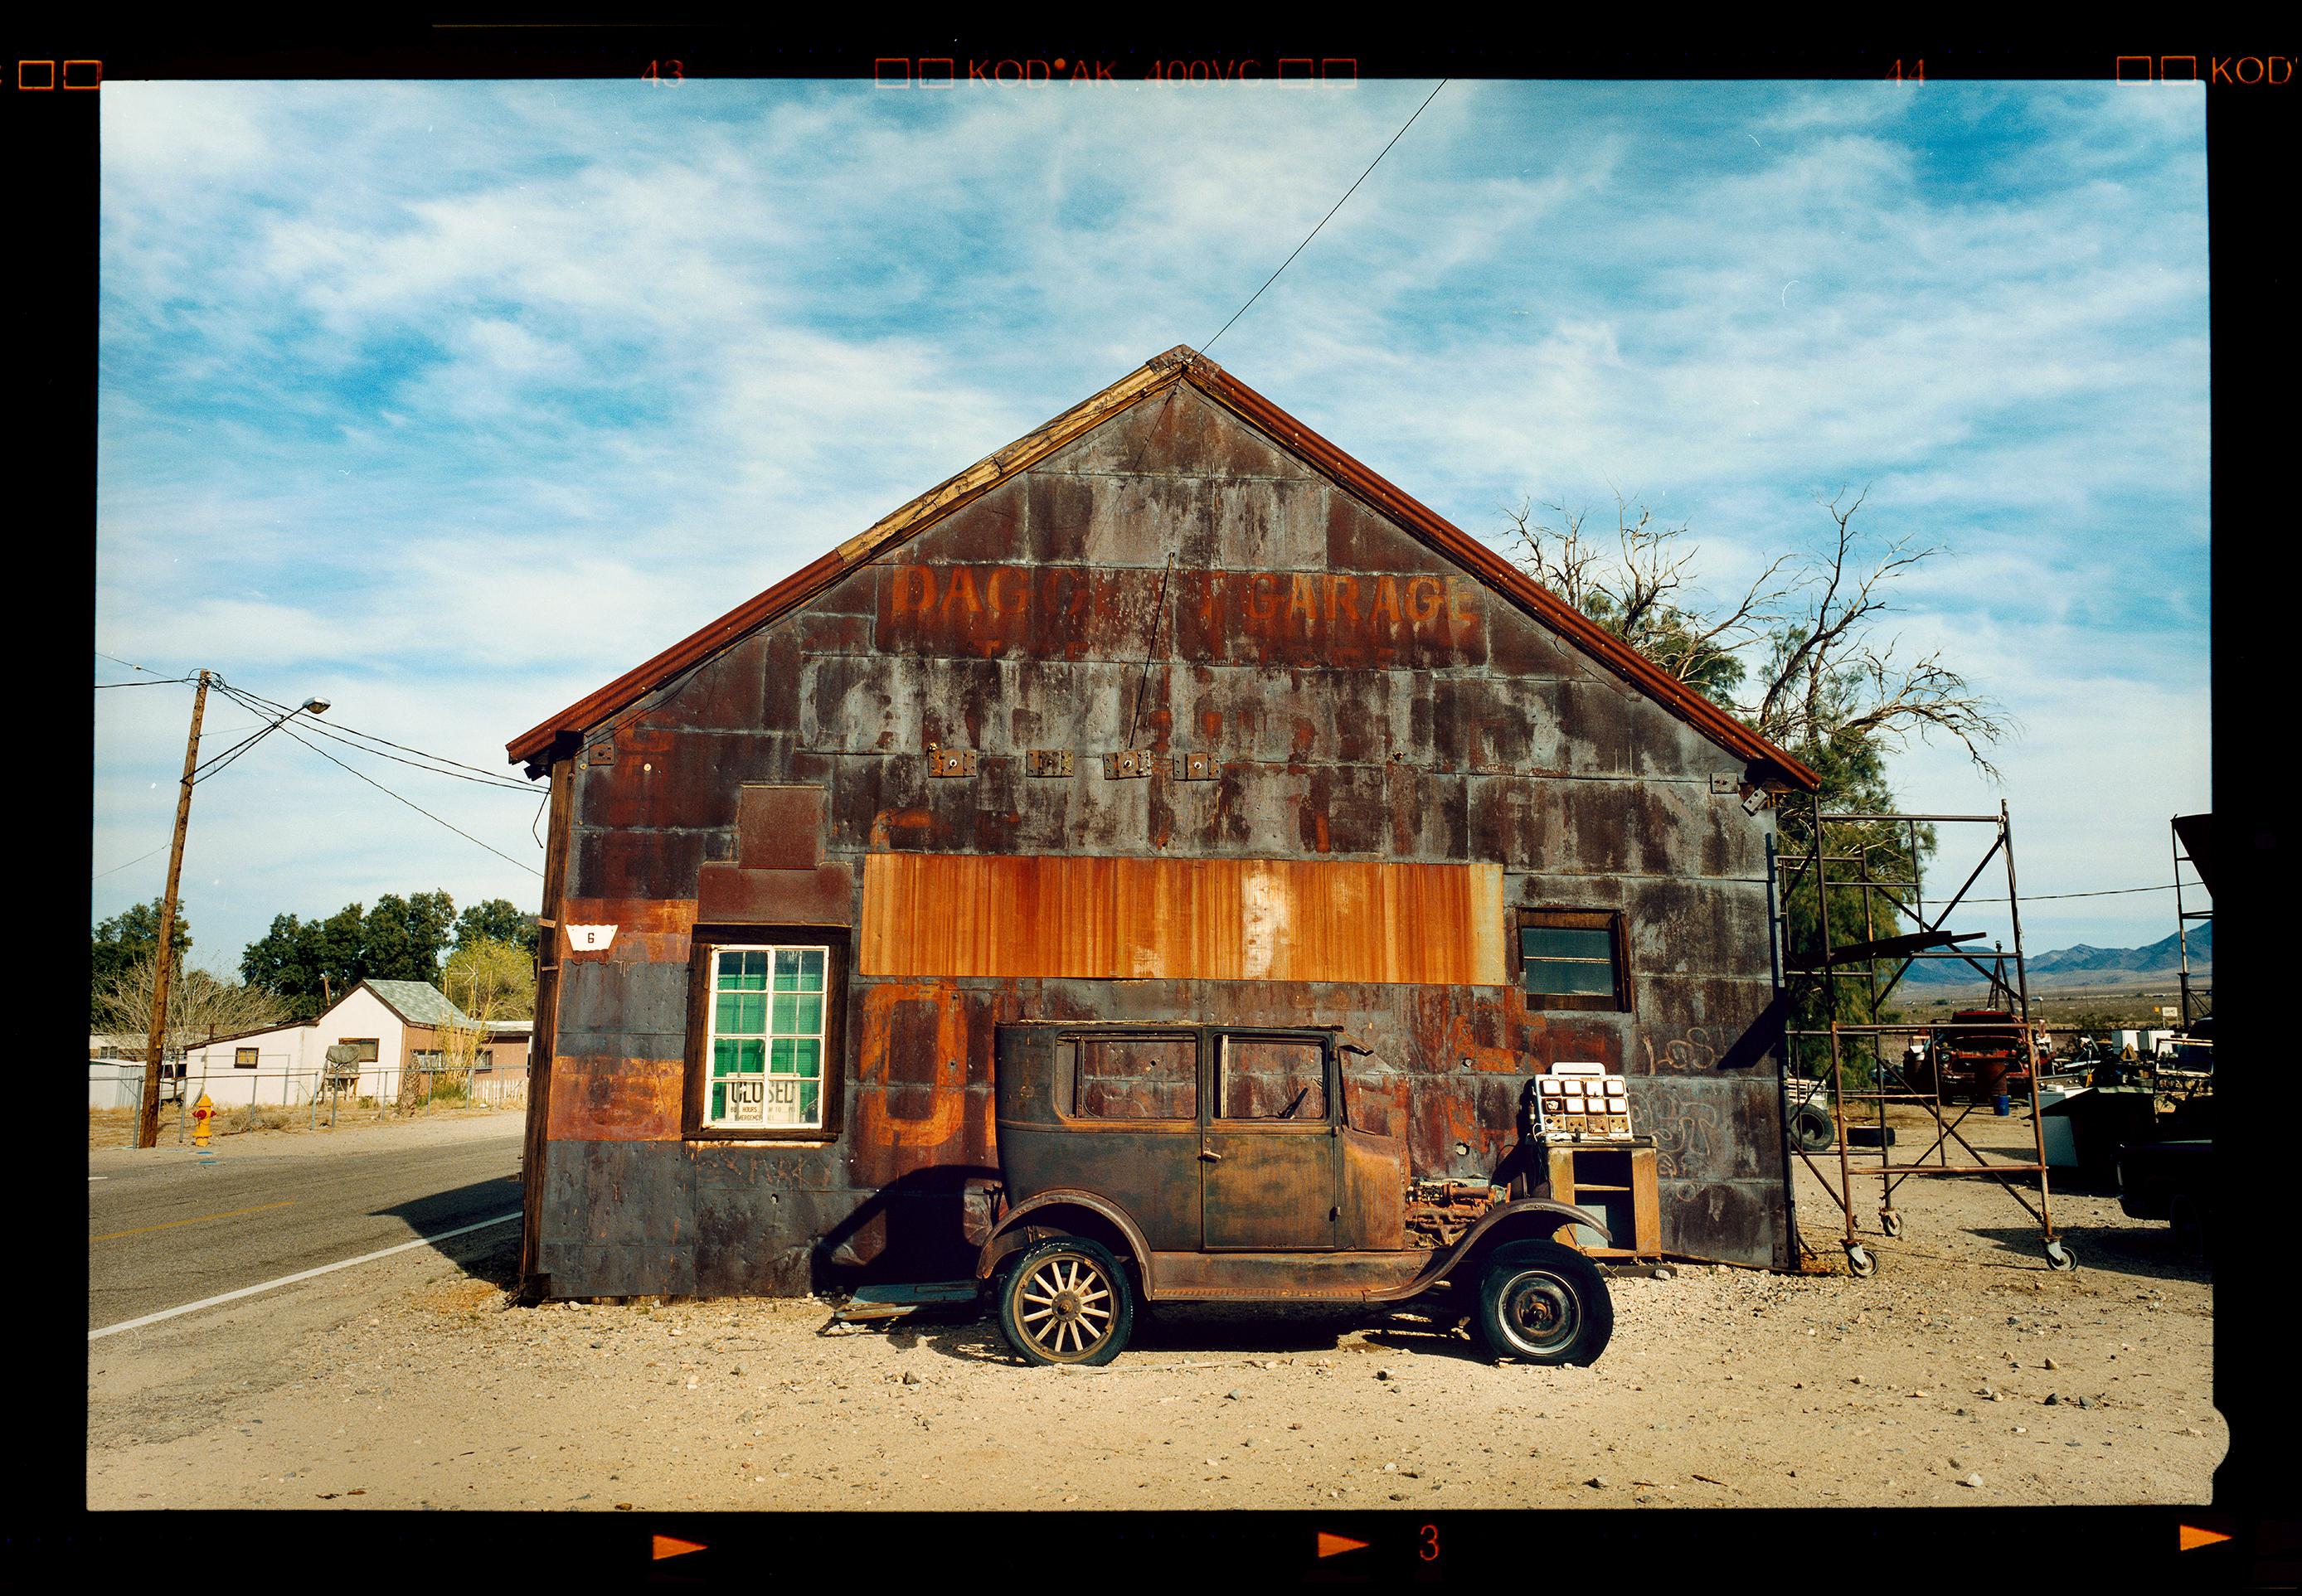 Modèle T et garage, Daggett, Californie - Photographie couleur